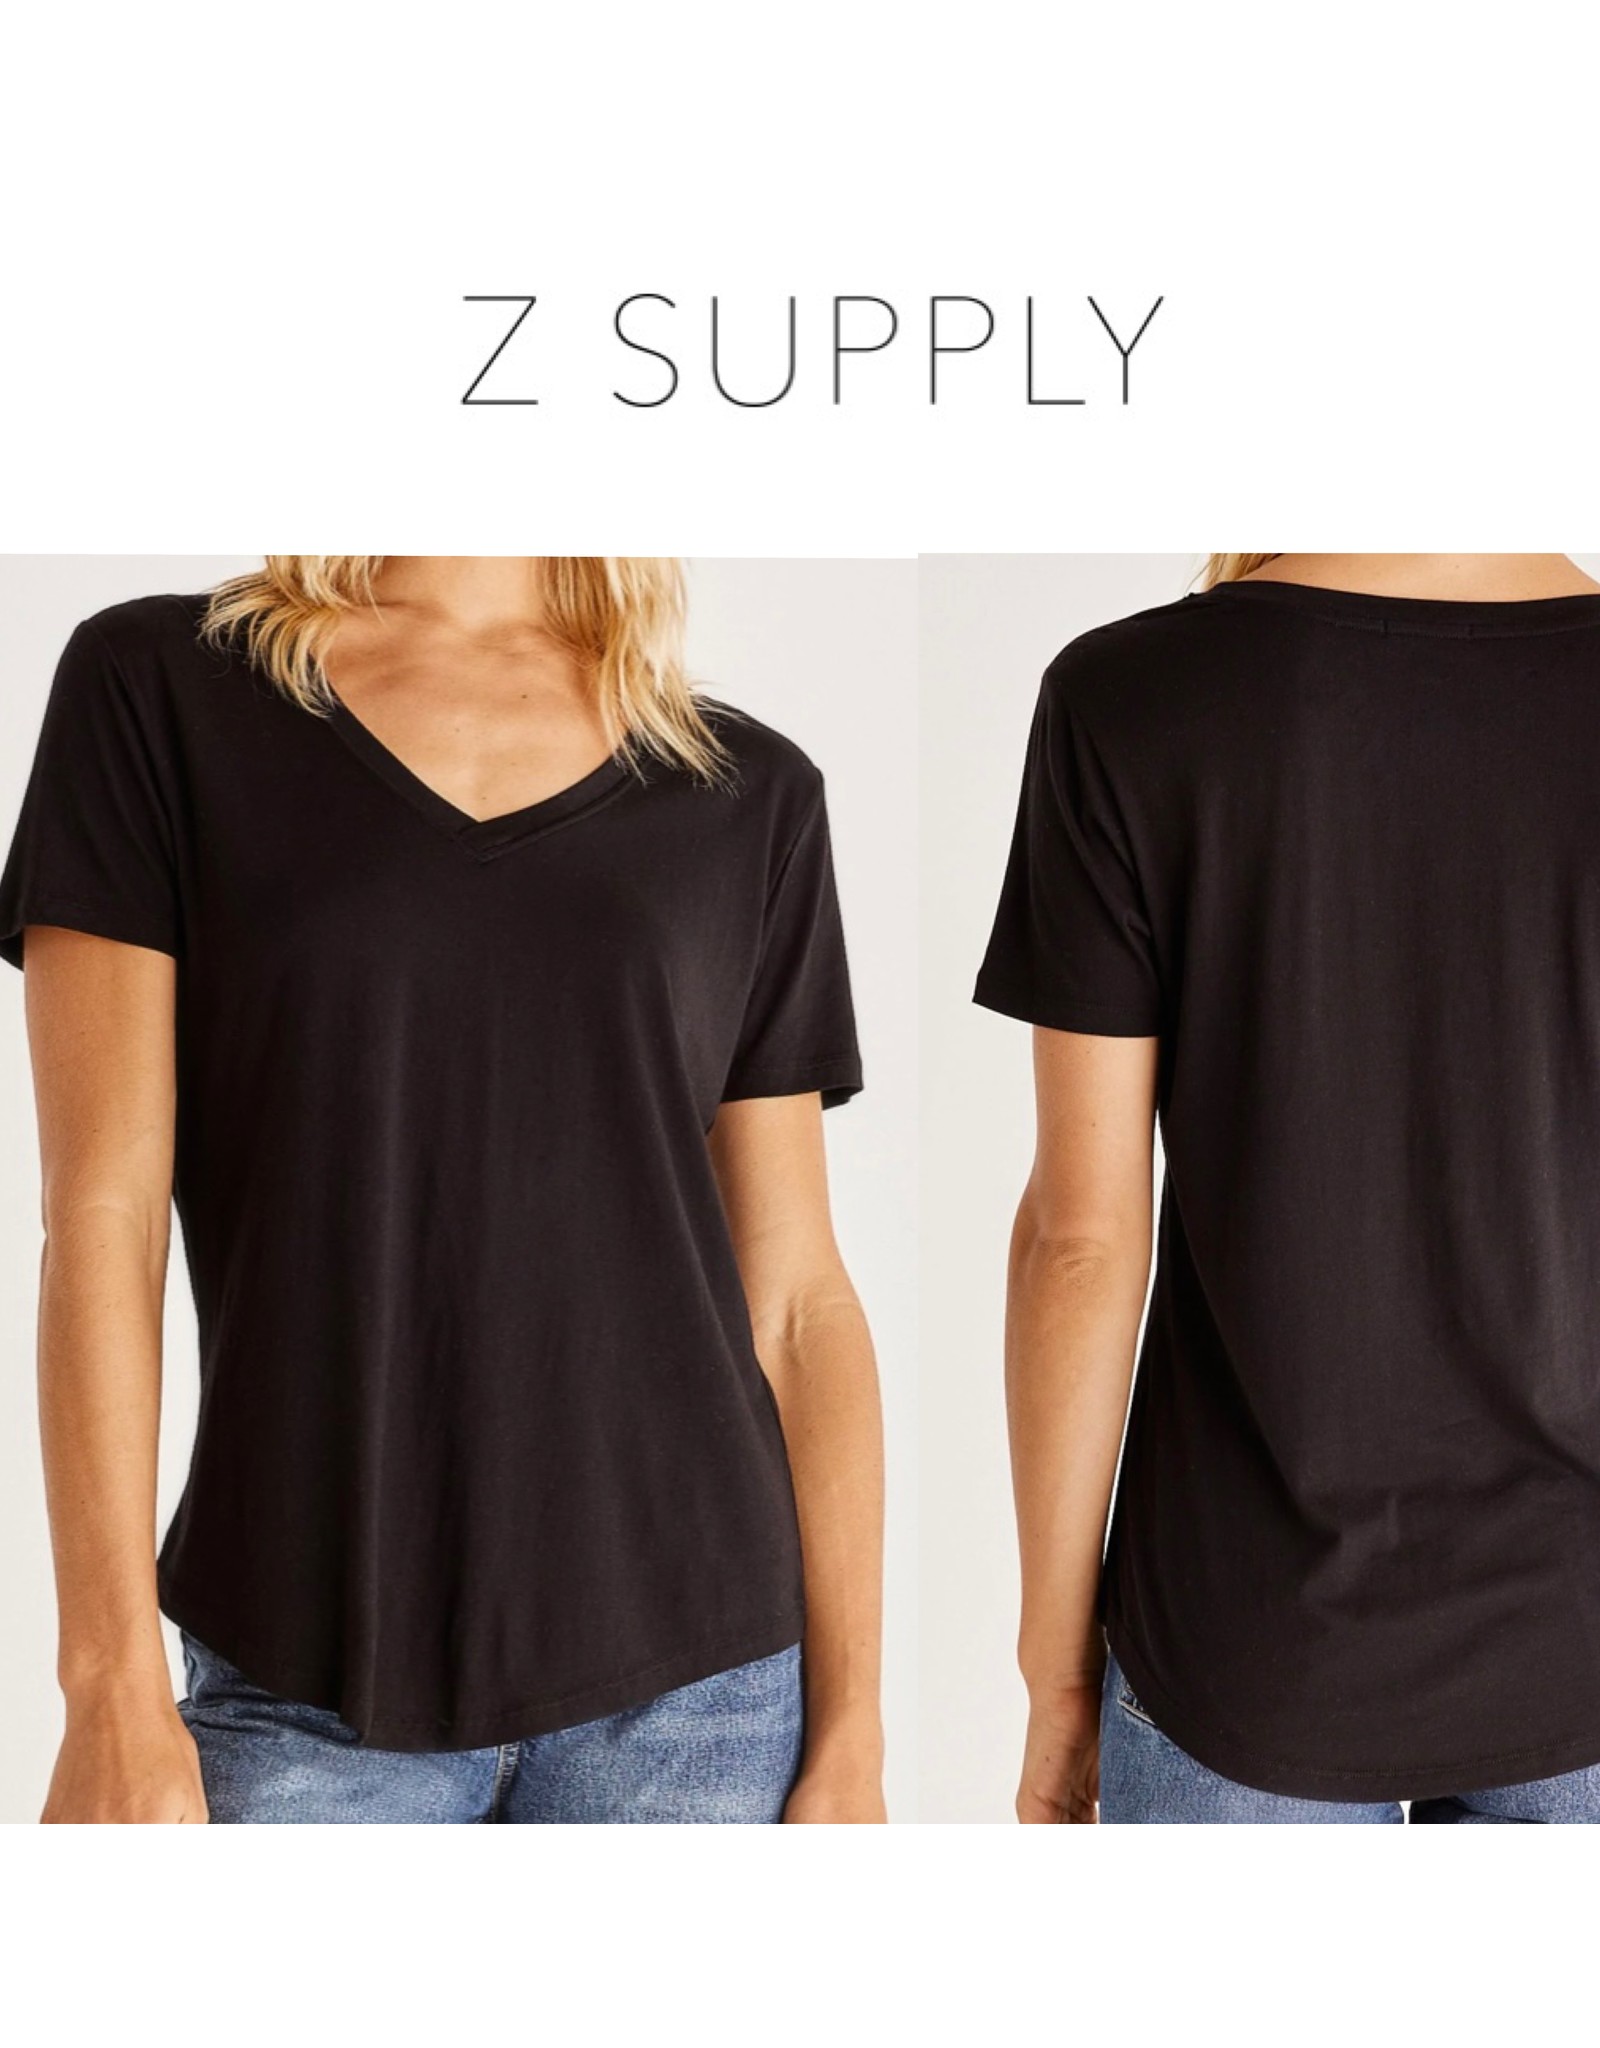 Z Supply ZSupply Modal V-Neck Tee